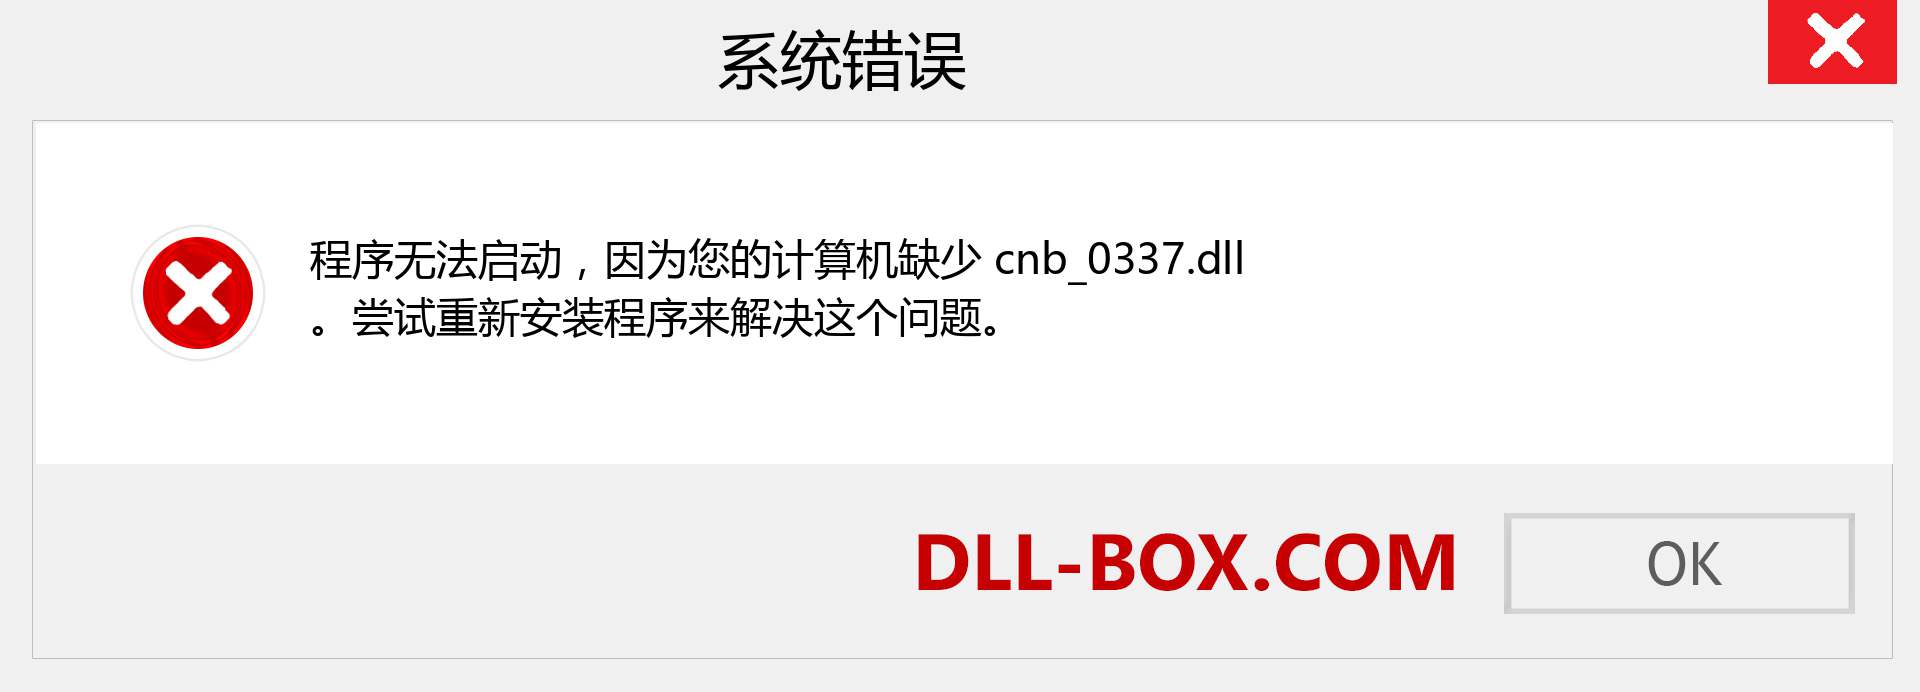 cnb_0337.dll 文件丢失？。 适用于 Windows 7、8、10 的下载 - 修复 Windows、照片、图像上的 cnb_0337 dll 丢失错误